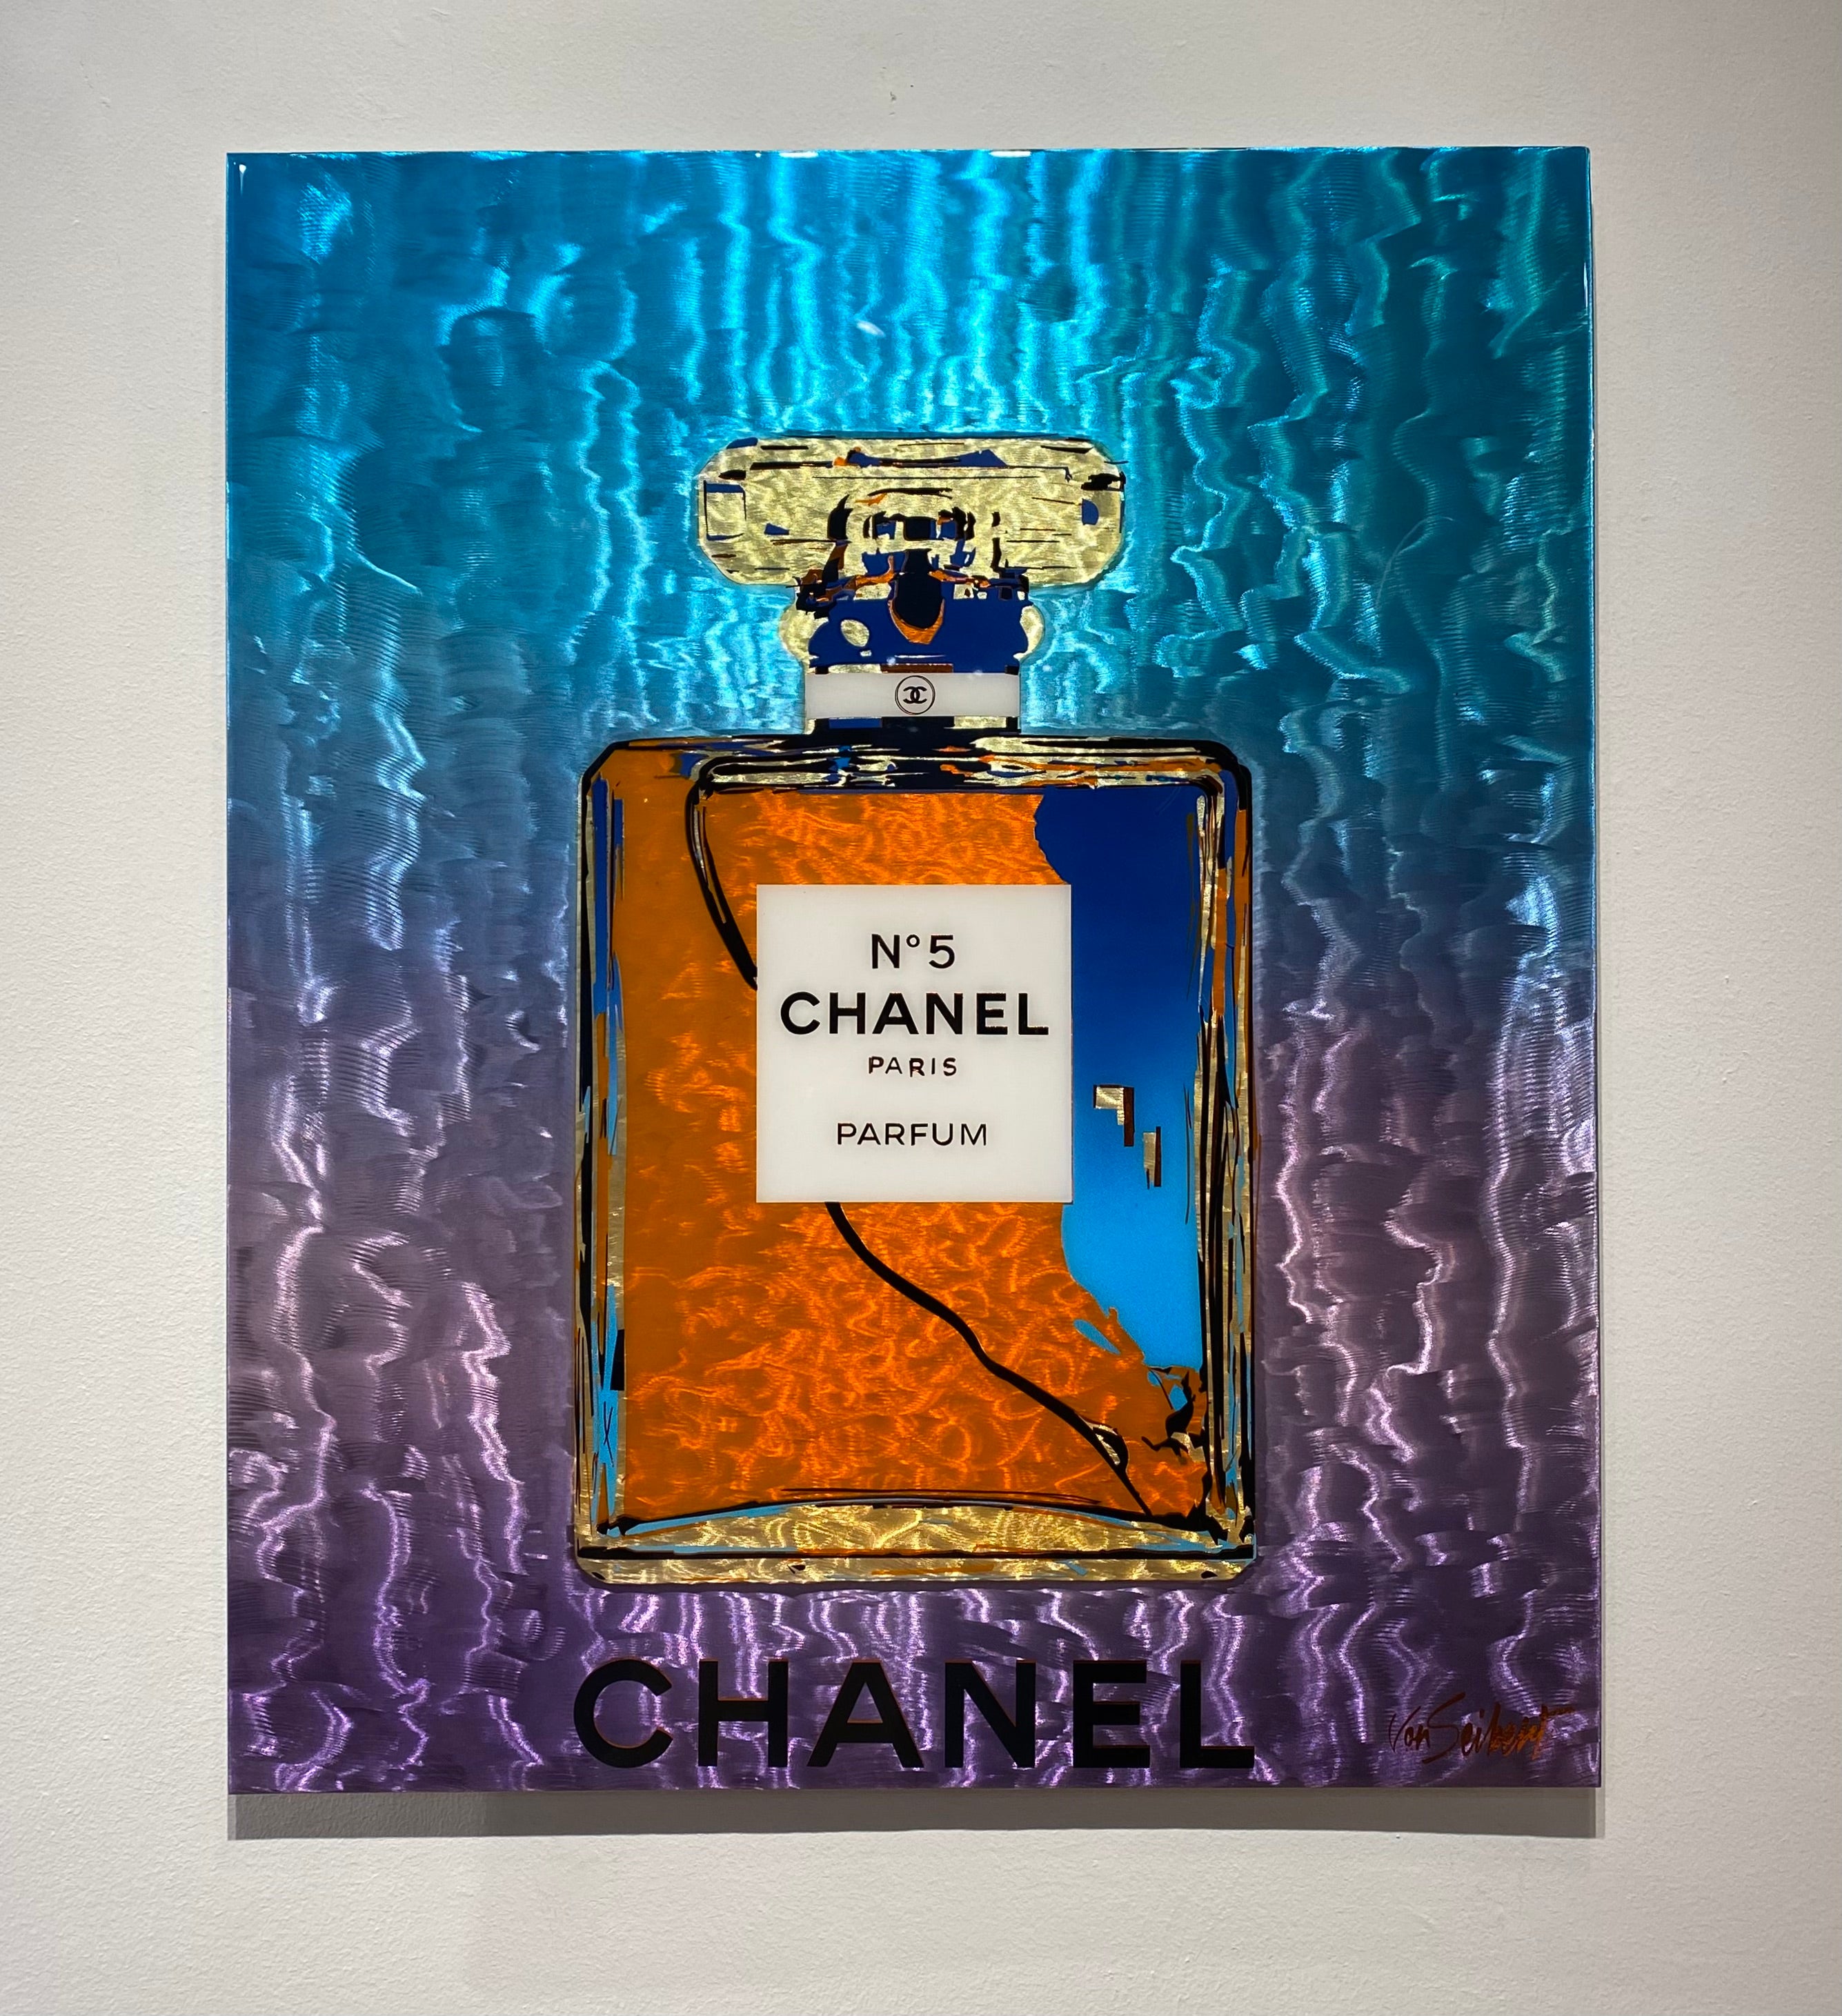 Chanel #3